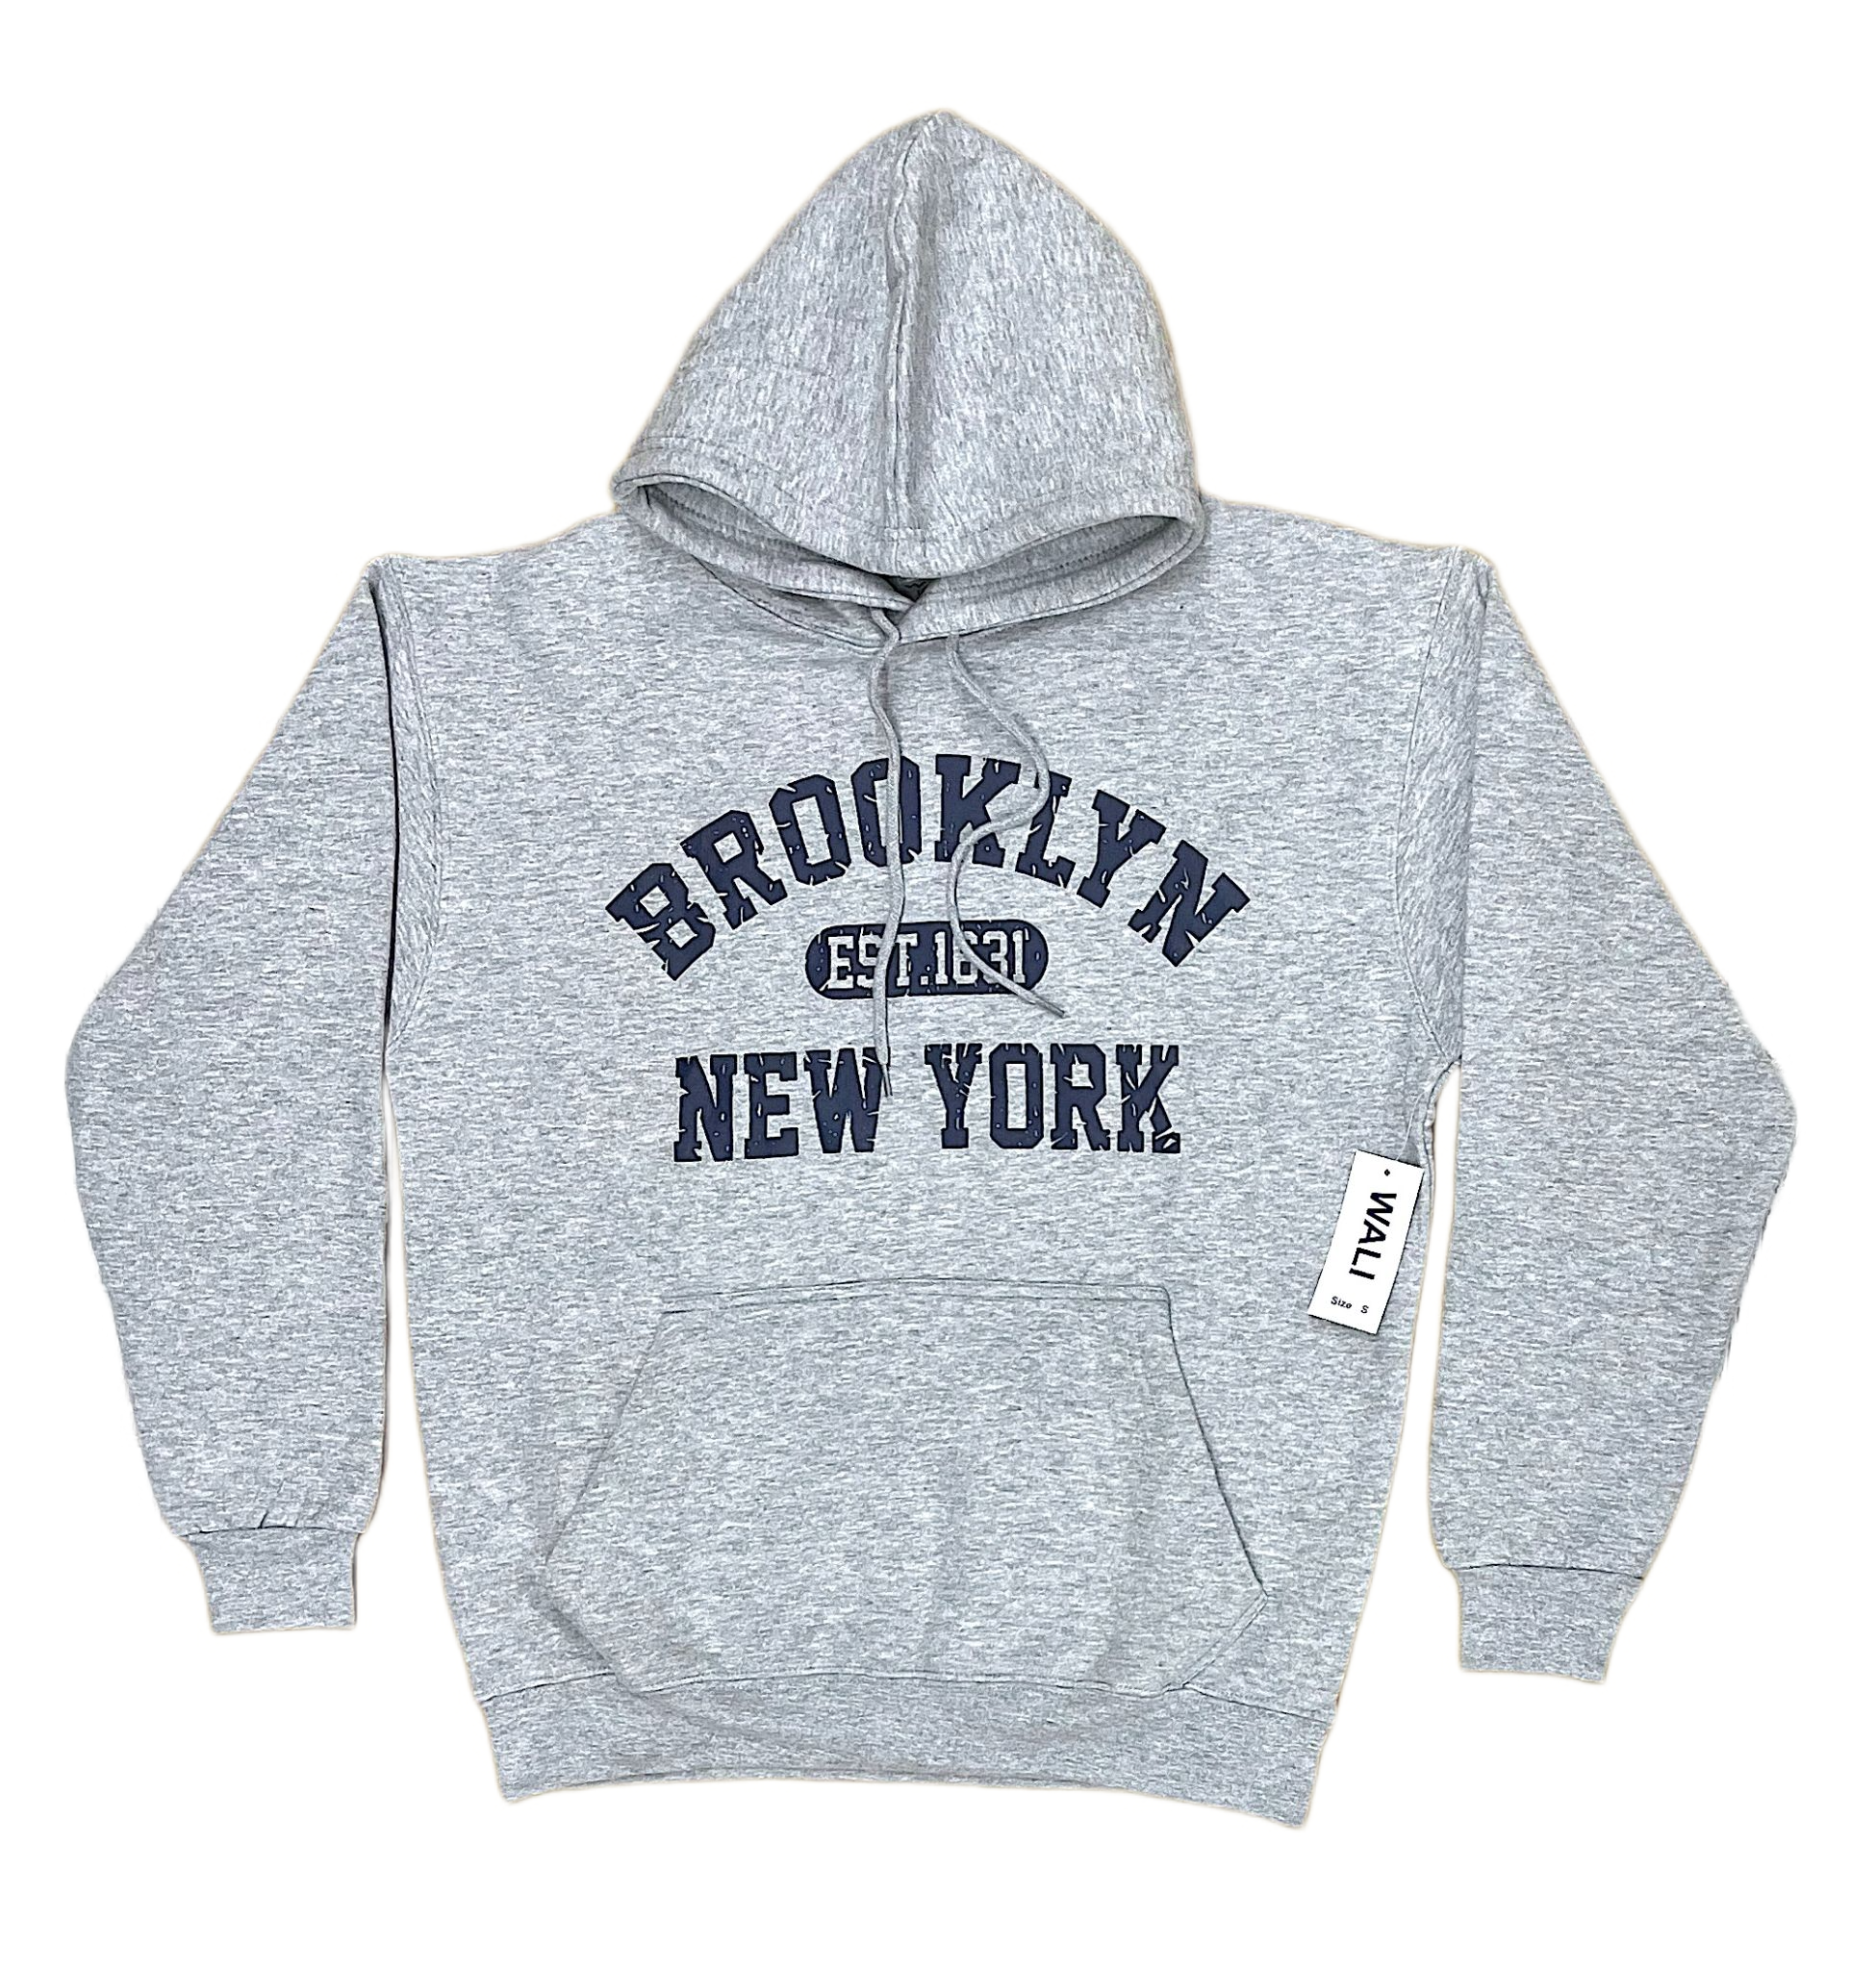 New York Sweatshirts, New York Hoodie